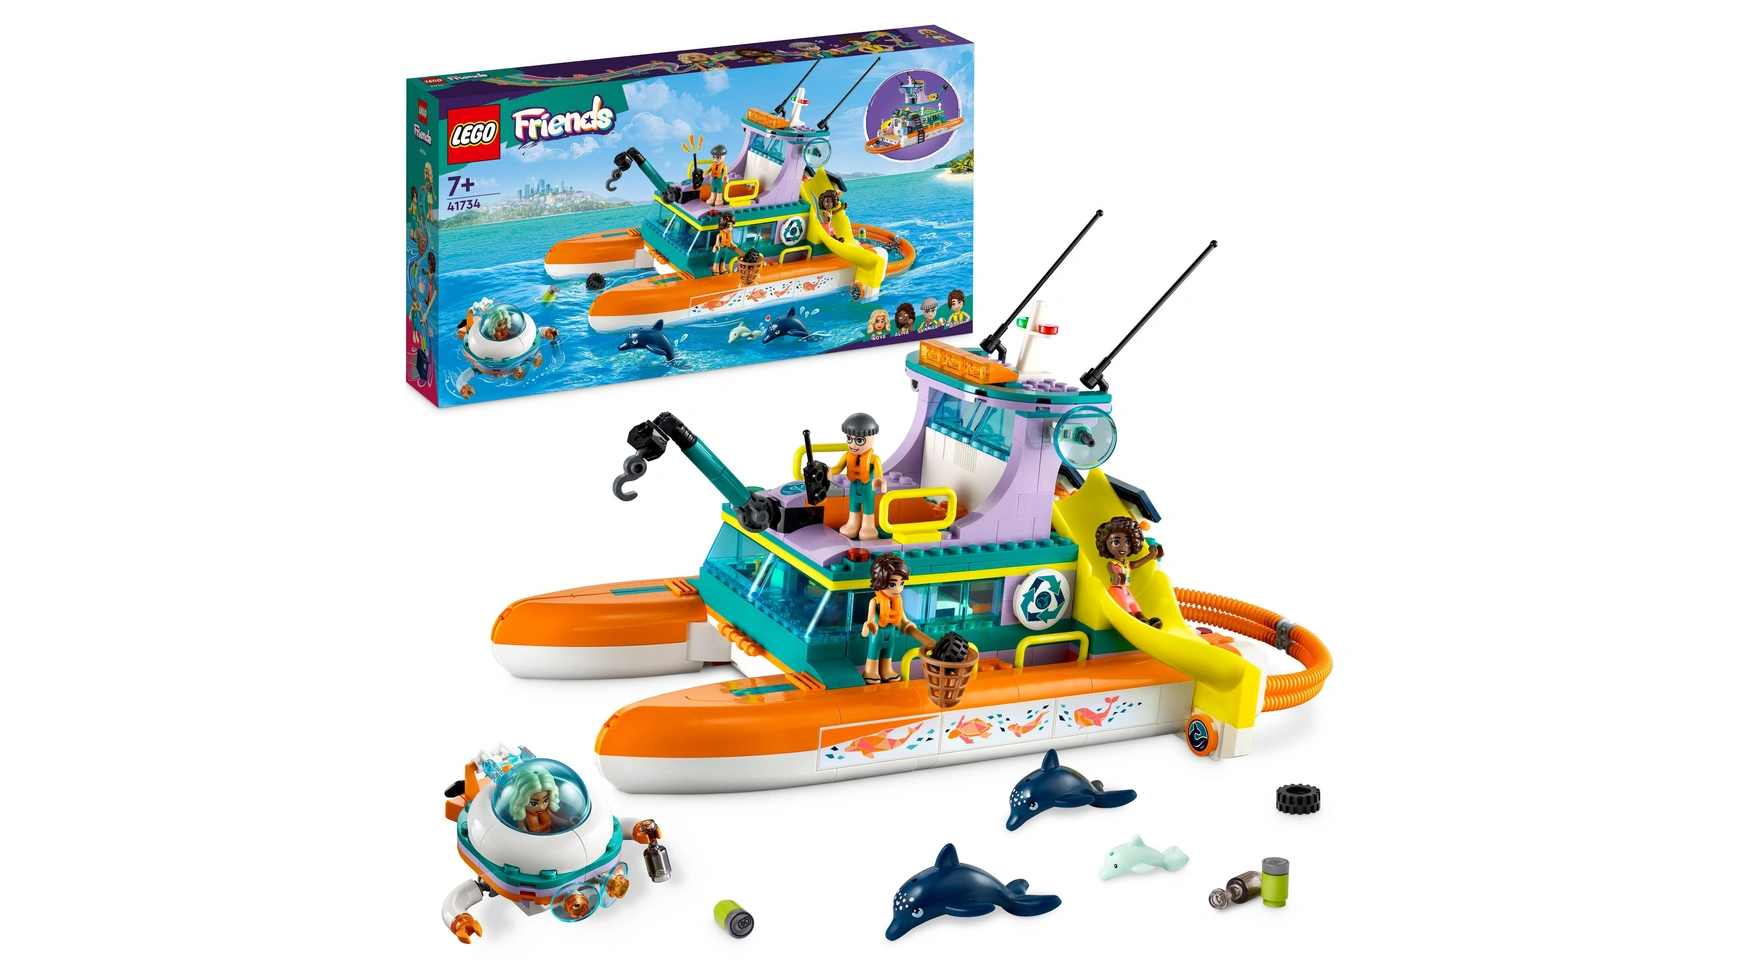 Lego Friends Набор Морской спасательный катер, игрушка с животными для детей lego friends набор морской спасательный катер игрушка с животными для детей